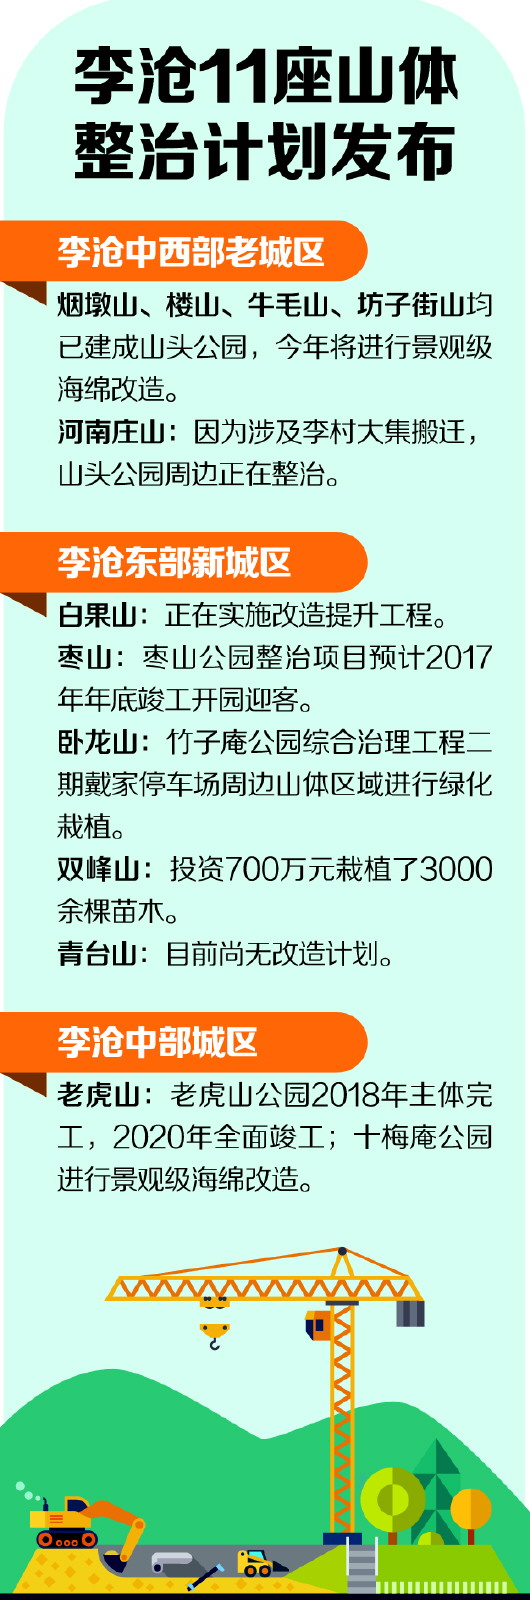 枣山公园年底开园迎客 老虎山公园2020年竣工